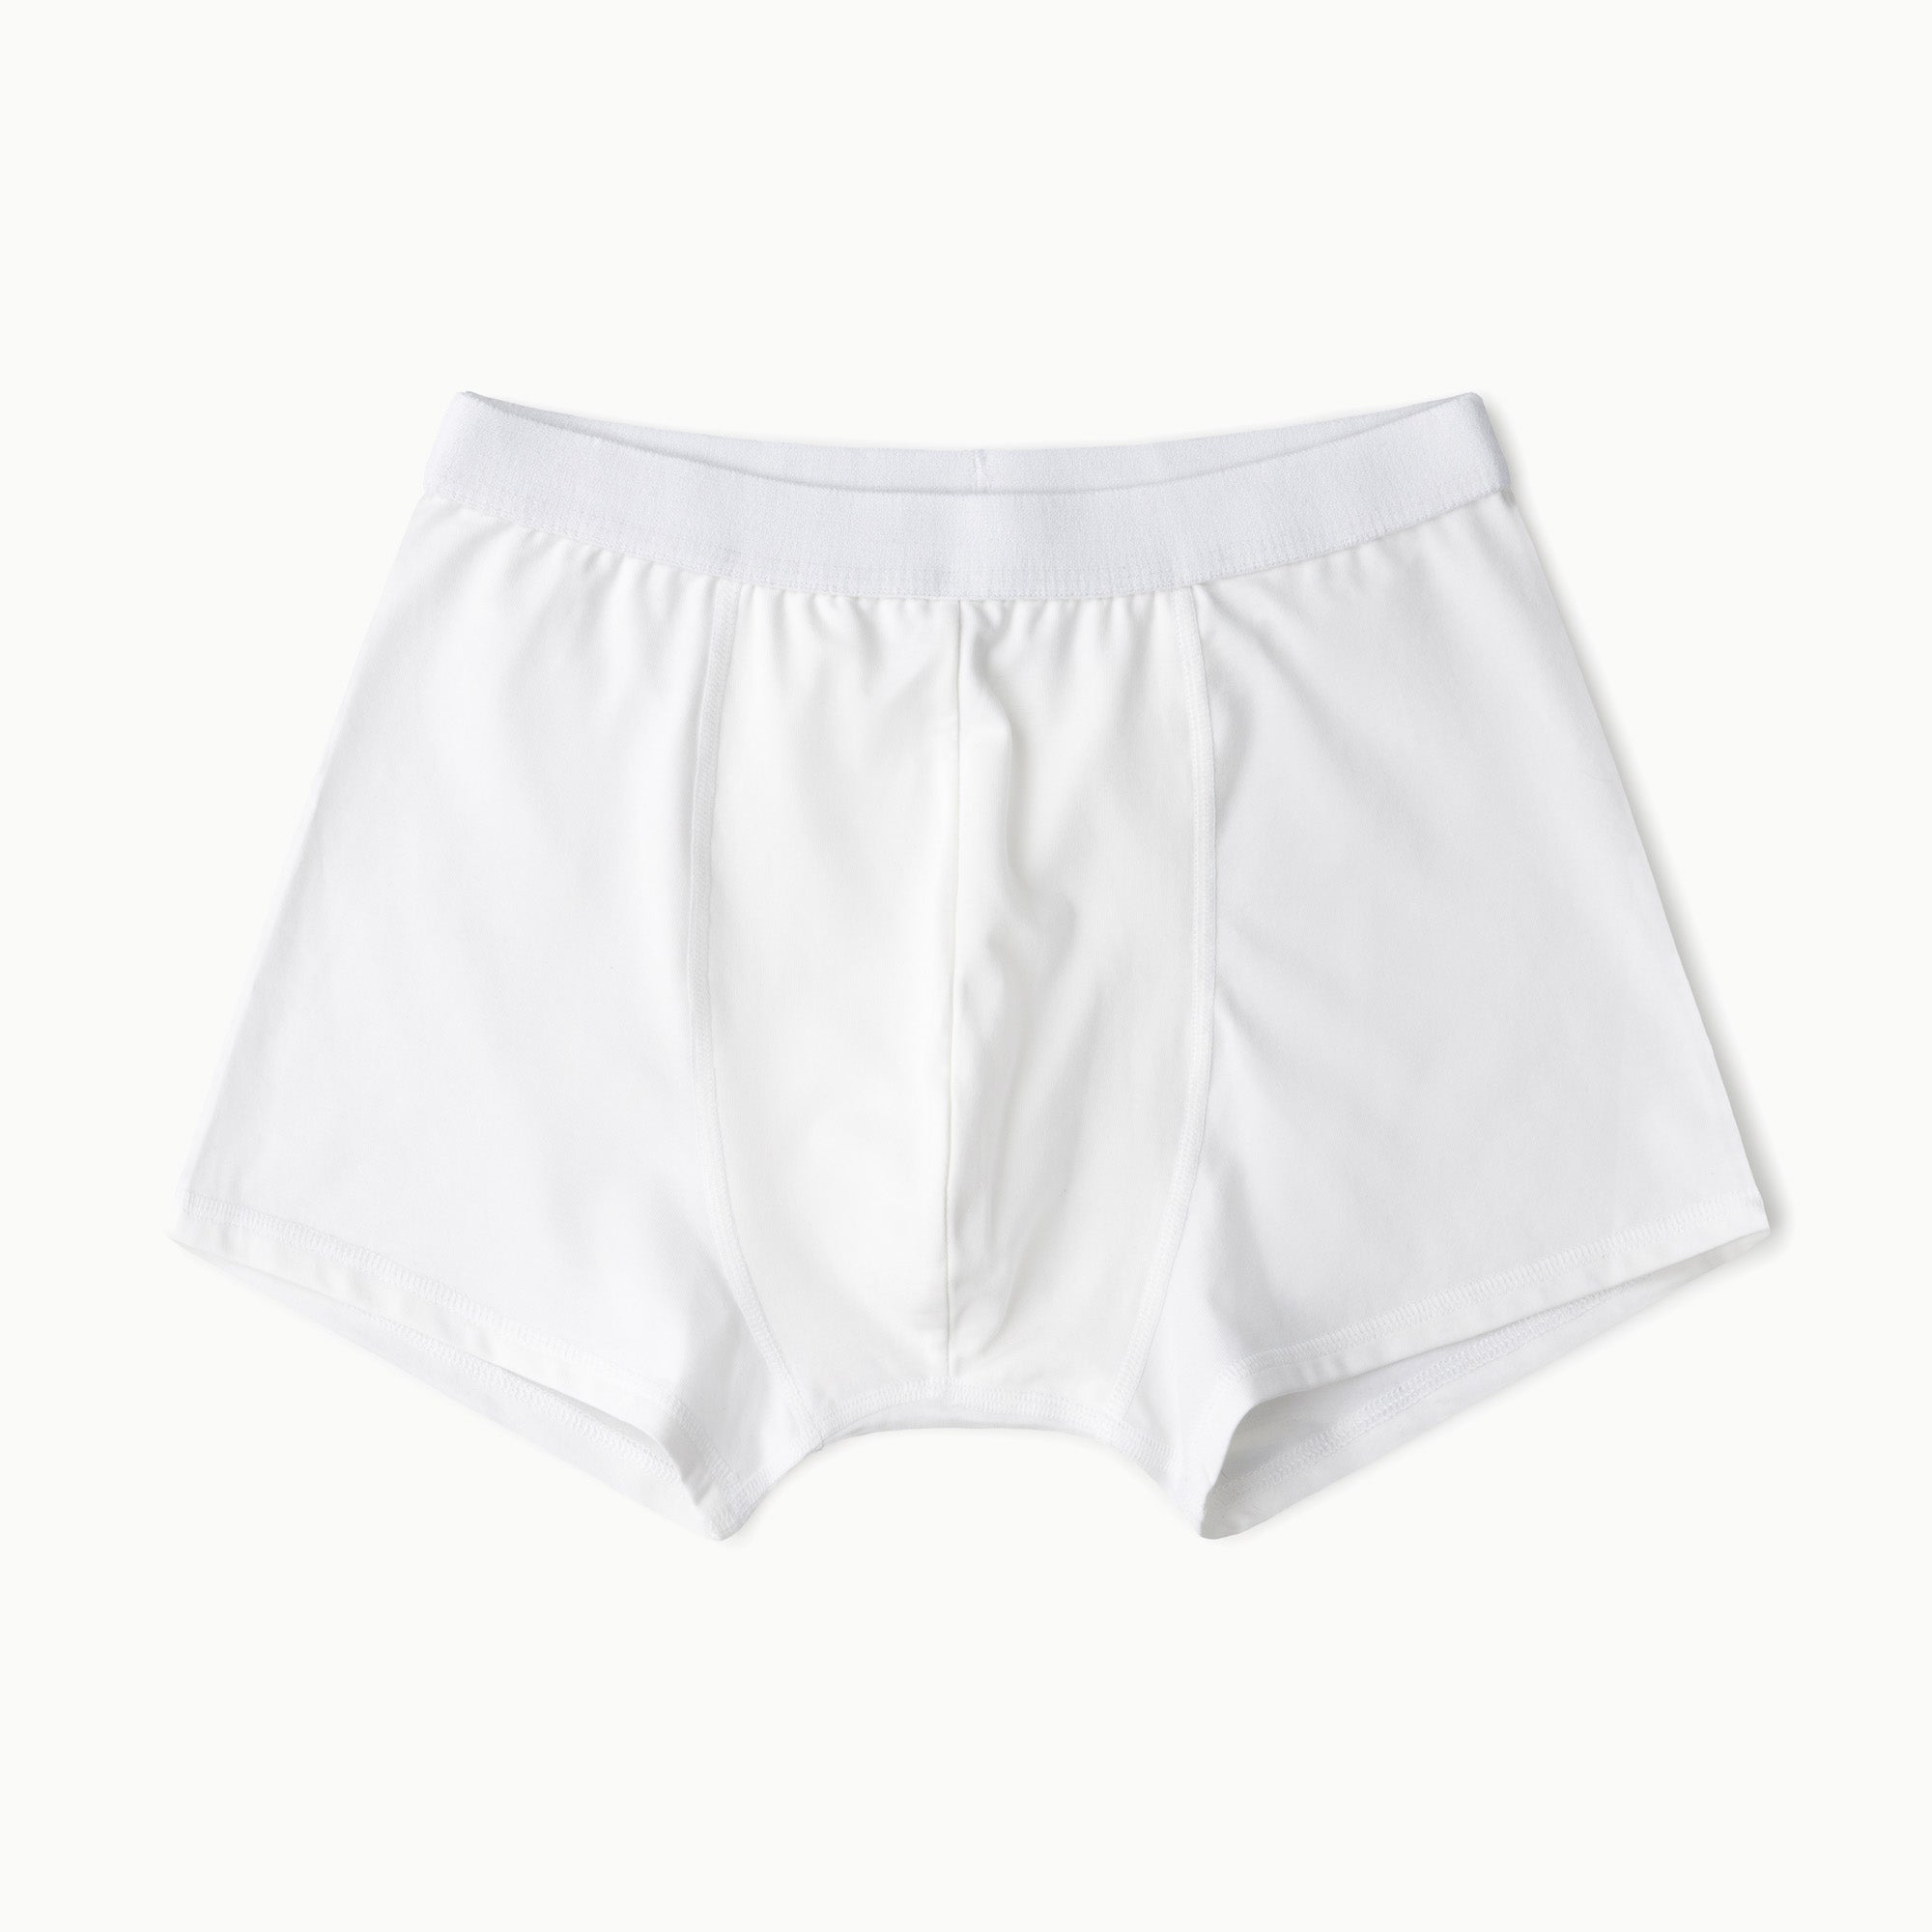 Shop Biofresh Underwear For Men online